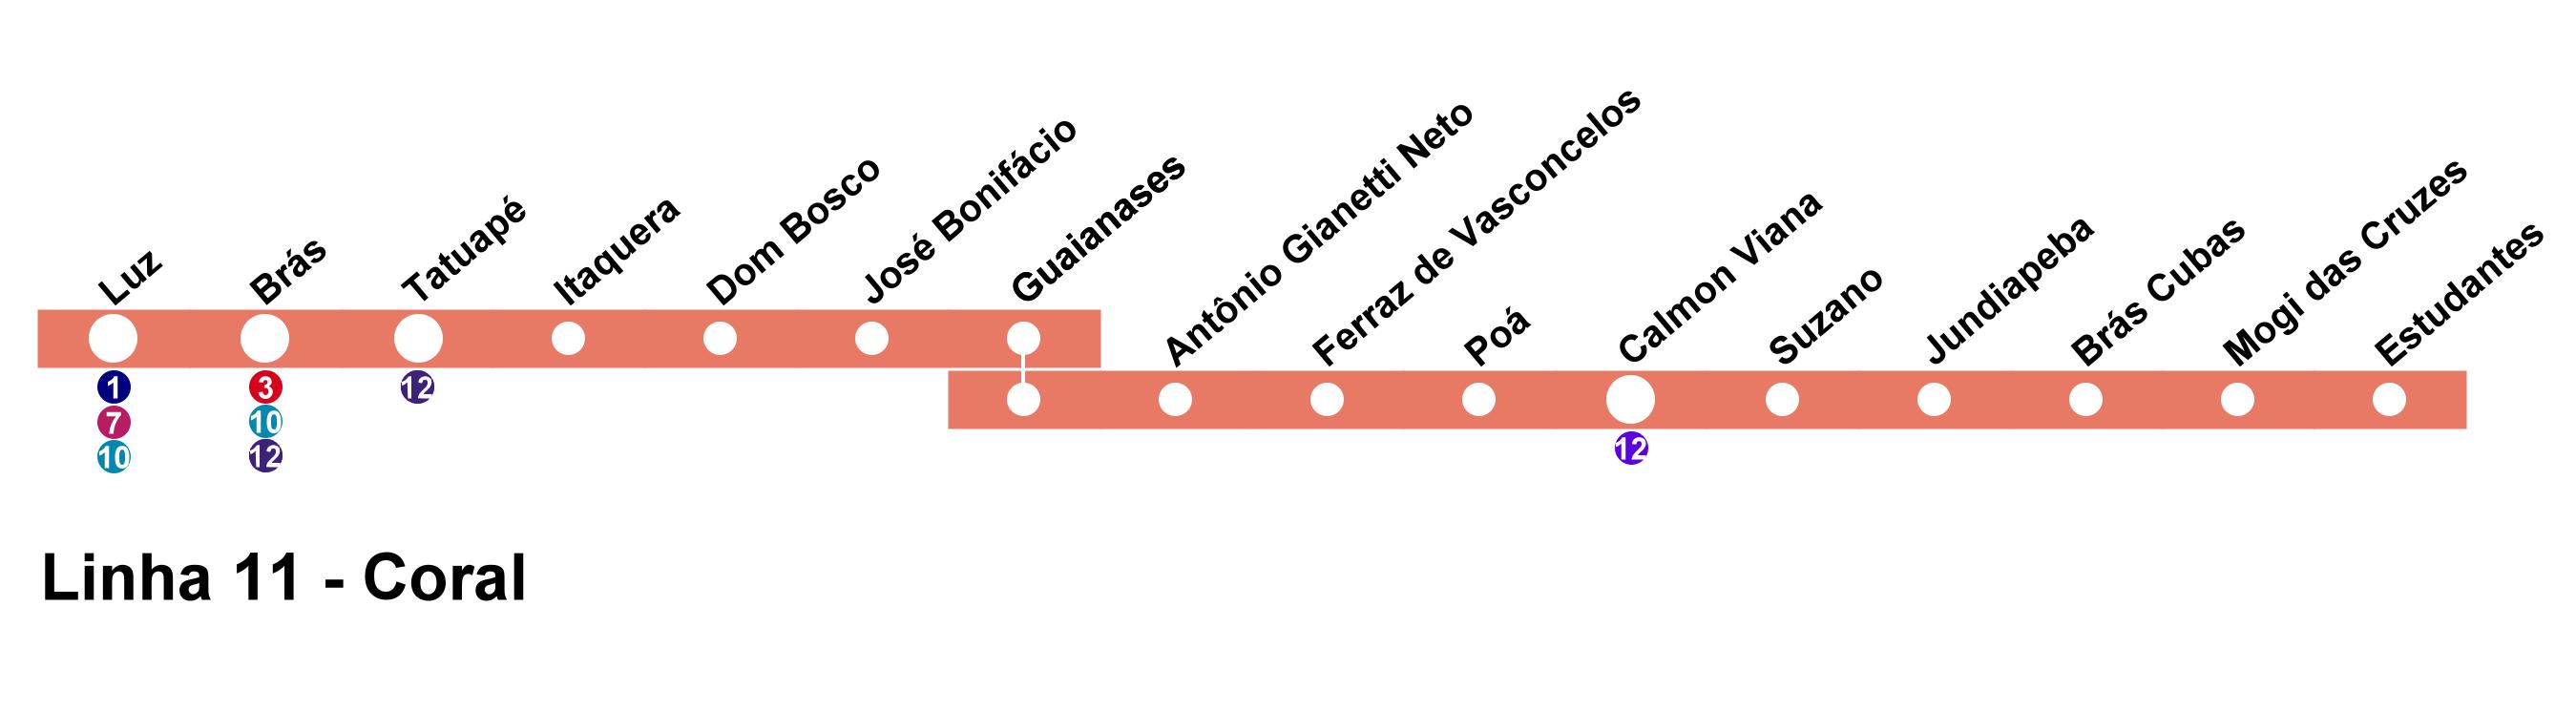 Estação Dom Bosco da CPTM - Linha 11 Coral Mapa